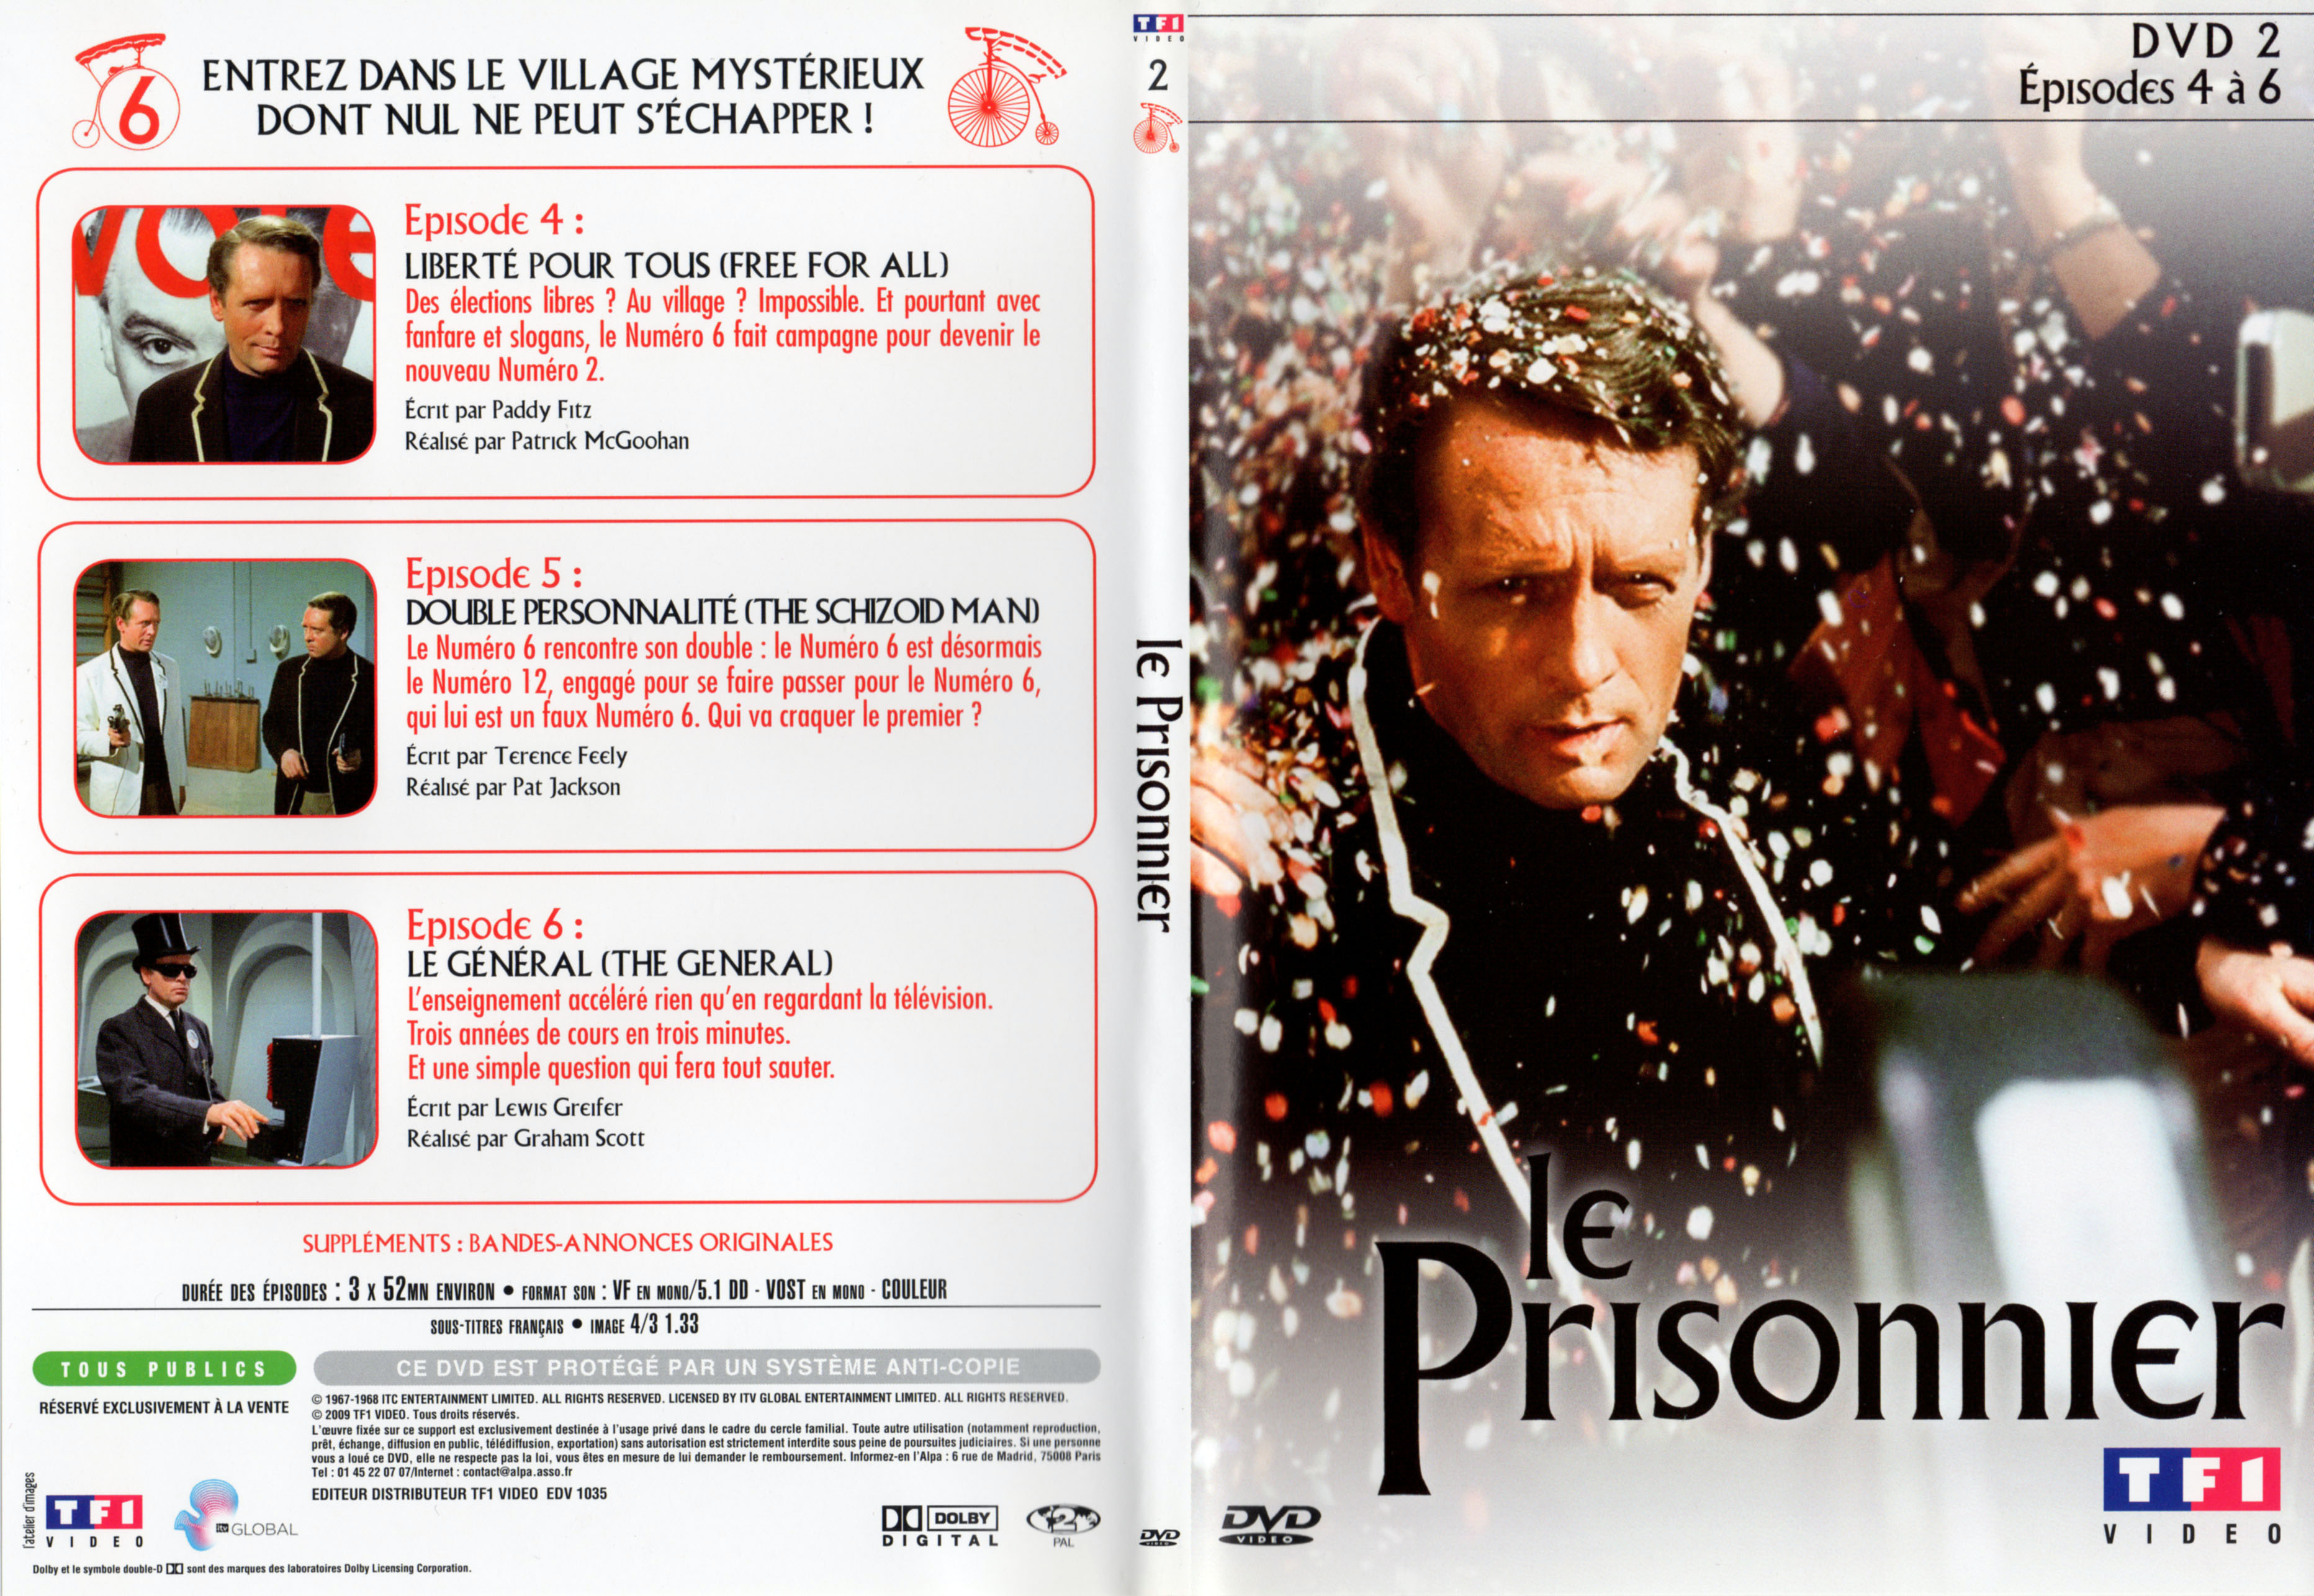 Jaquette DVD Le prisonnier DVD 2 v2